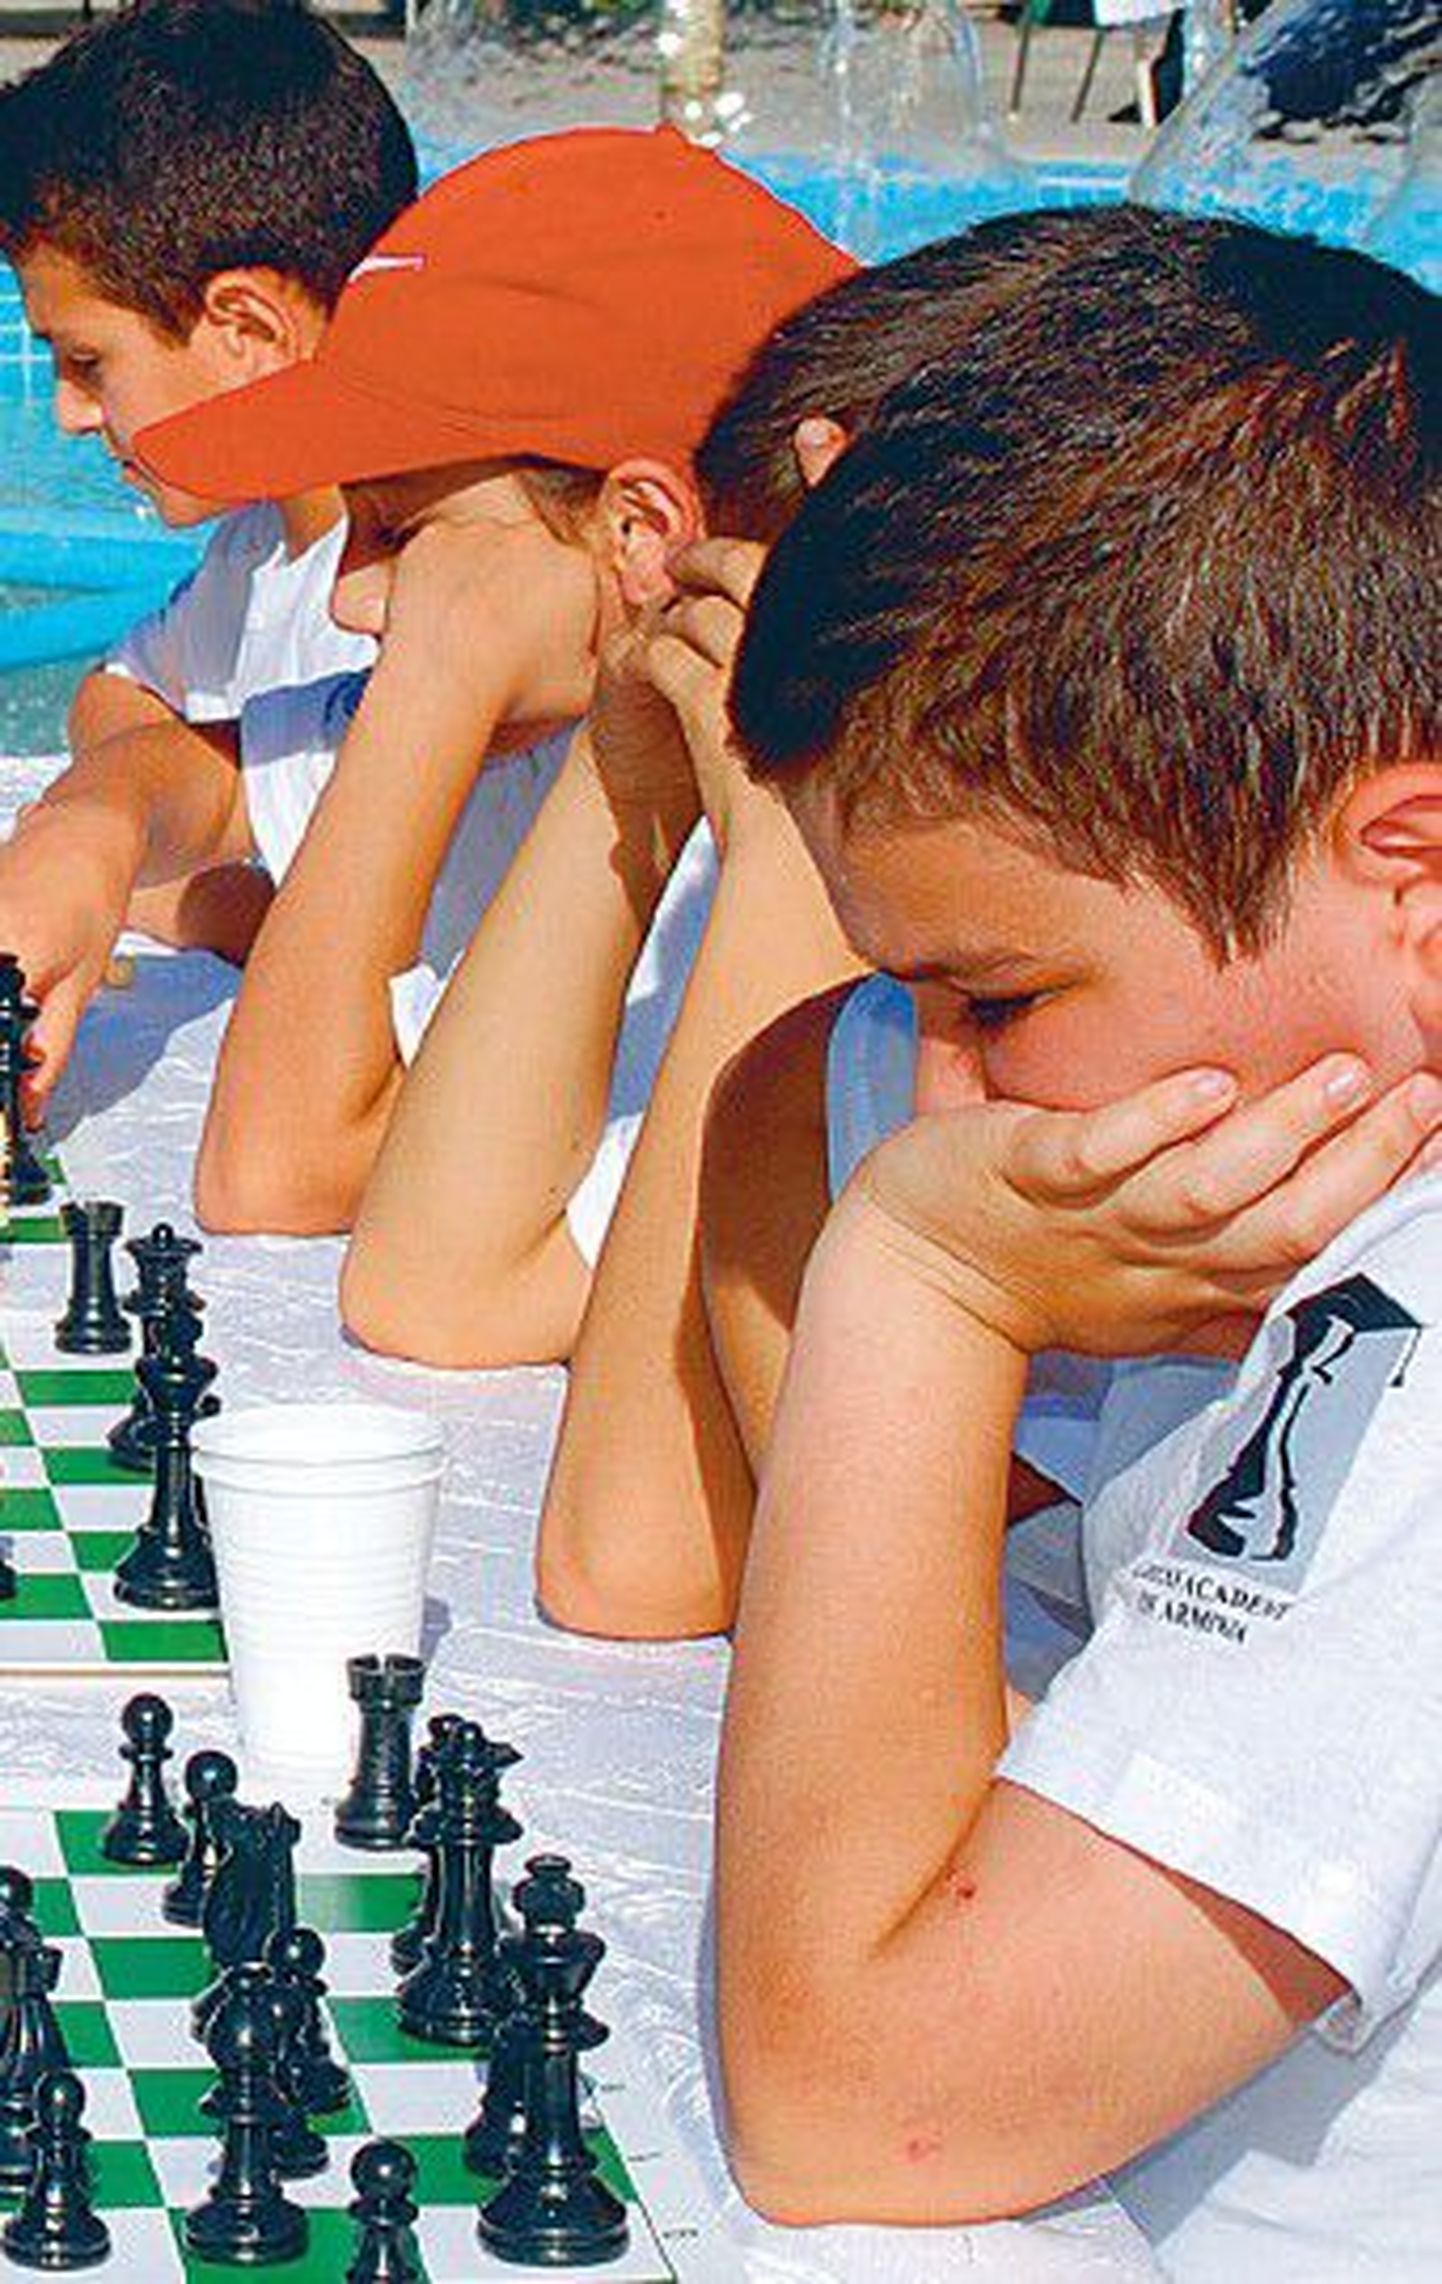 Юные армянские шахматисты и в каникулы не расстаются с любимой игрой, которая очень популярна в Армении.